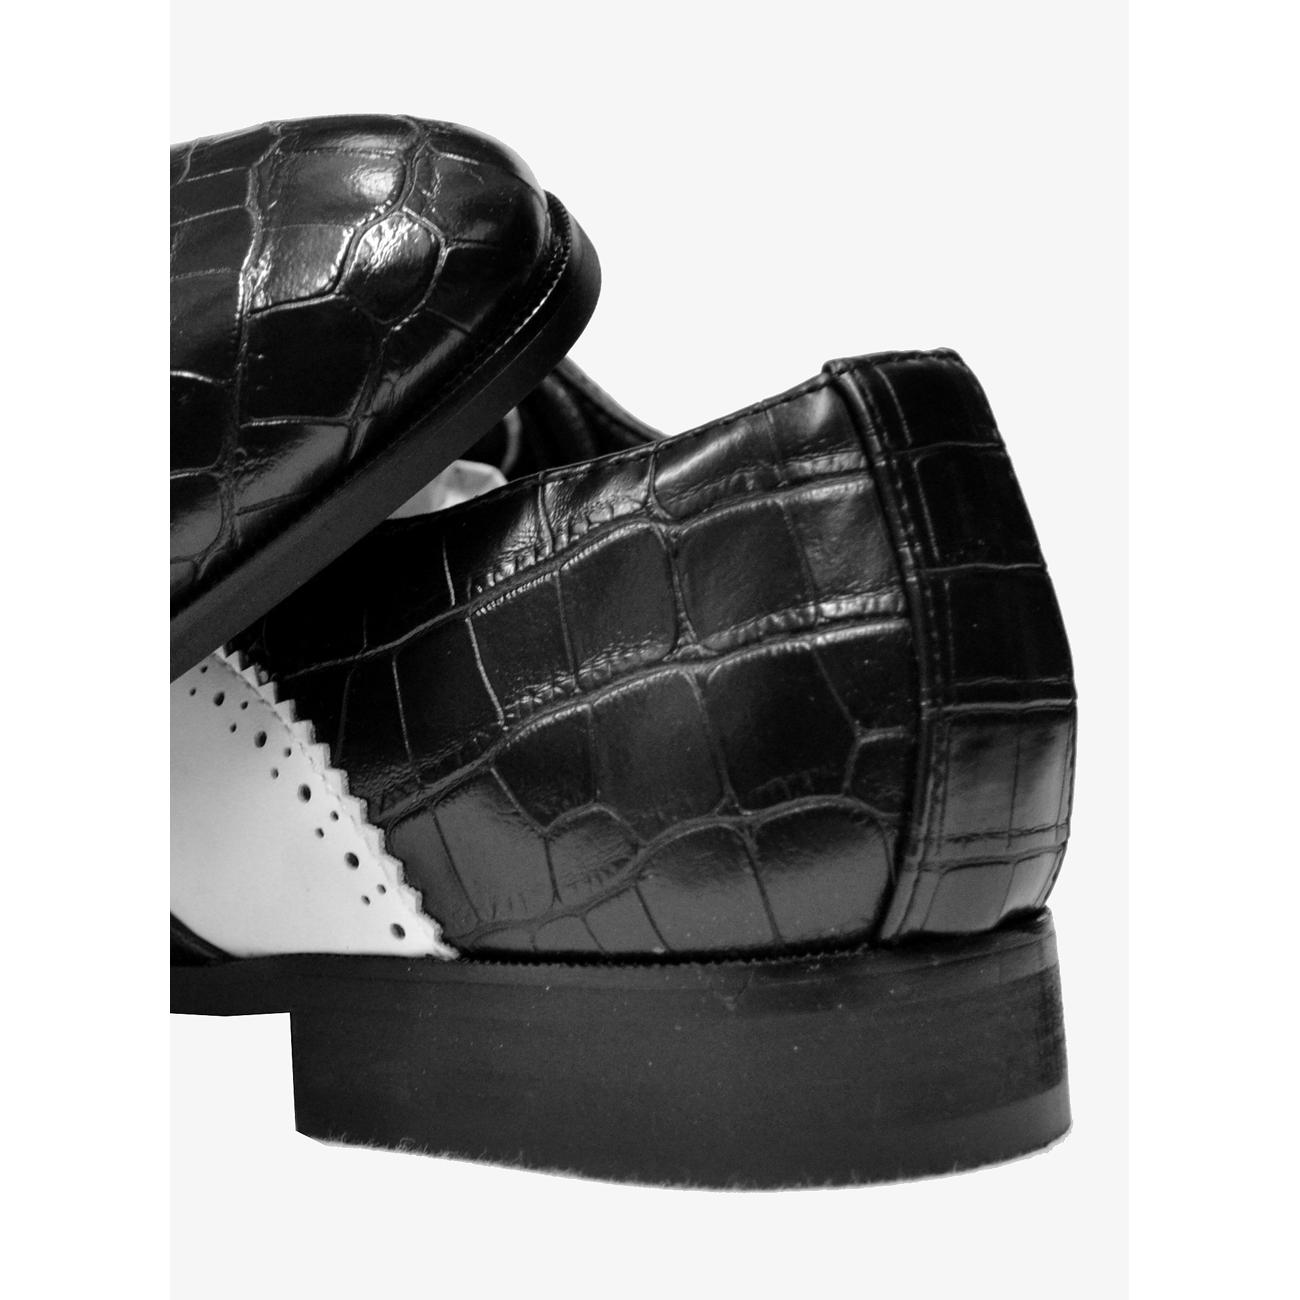 Antonio Cerrelli Black White Alligator Print Vegan Leather Wingtip Oxford Shoe